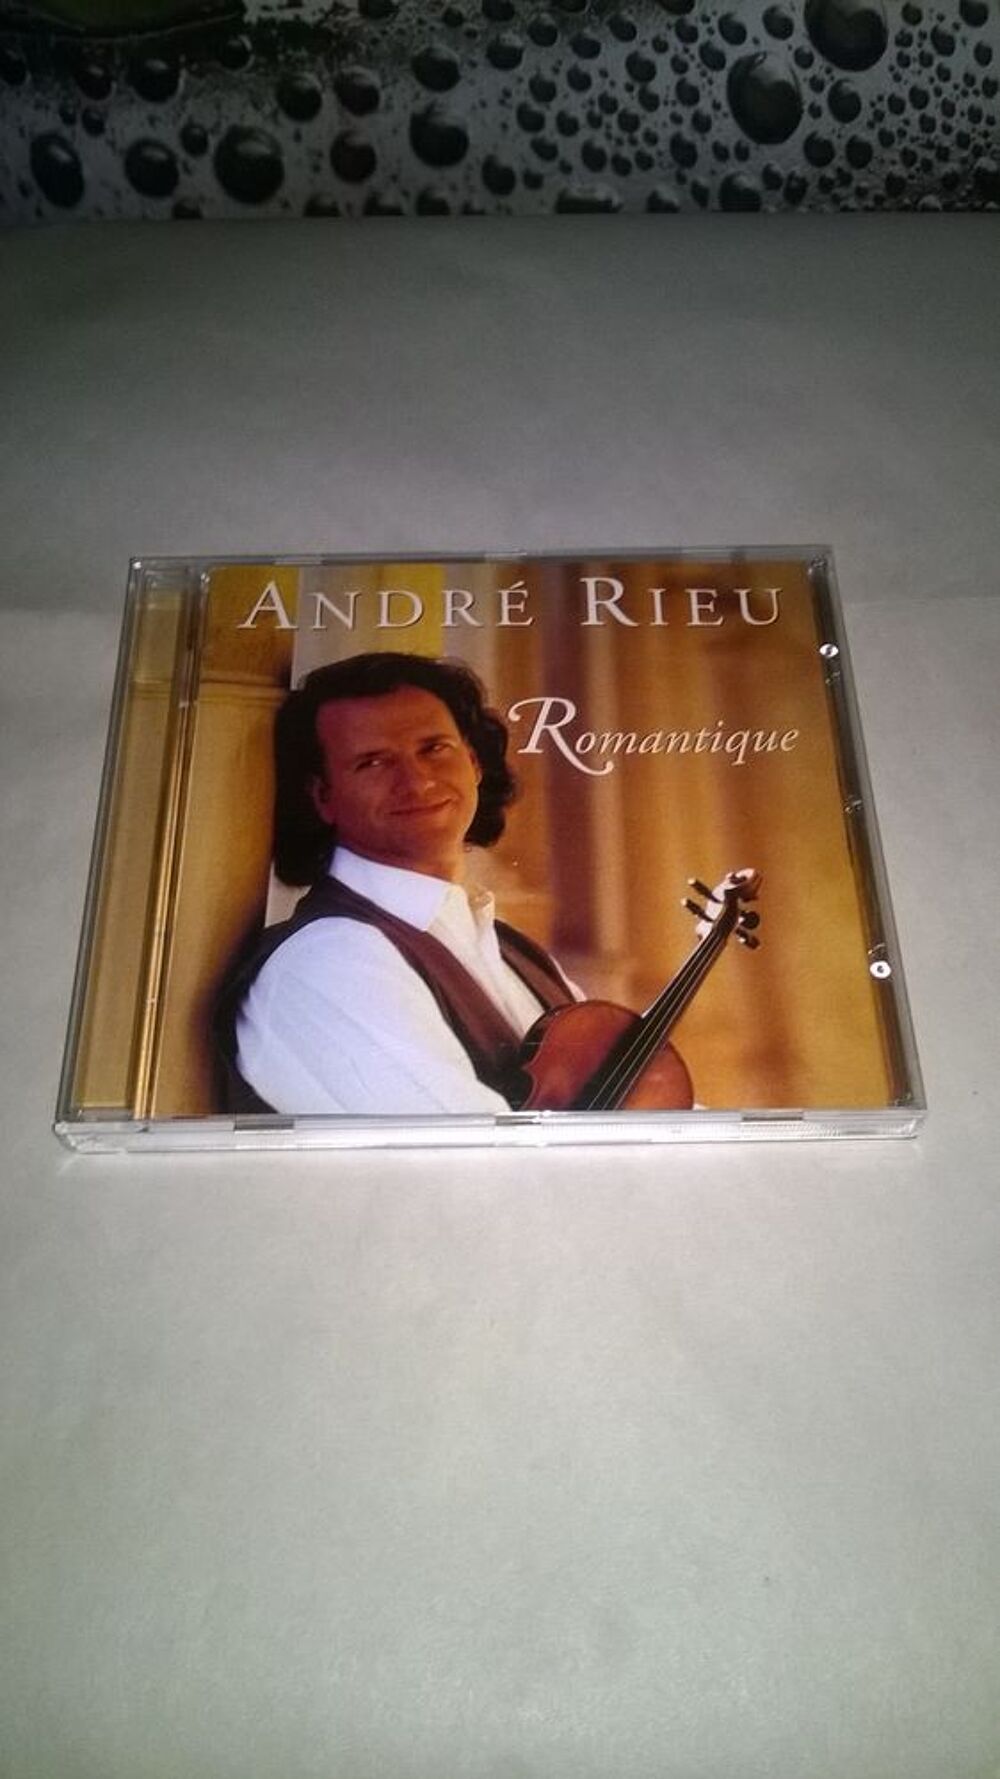 CD Andr&eacute; Rieu
Romantic moments
1988
Excellent etat
Love CD et vinyles